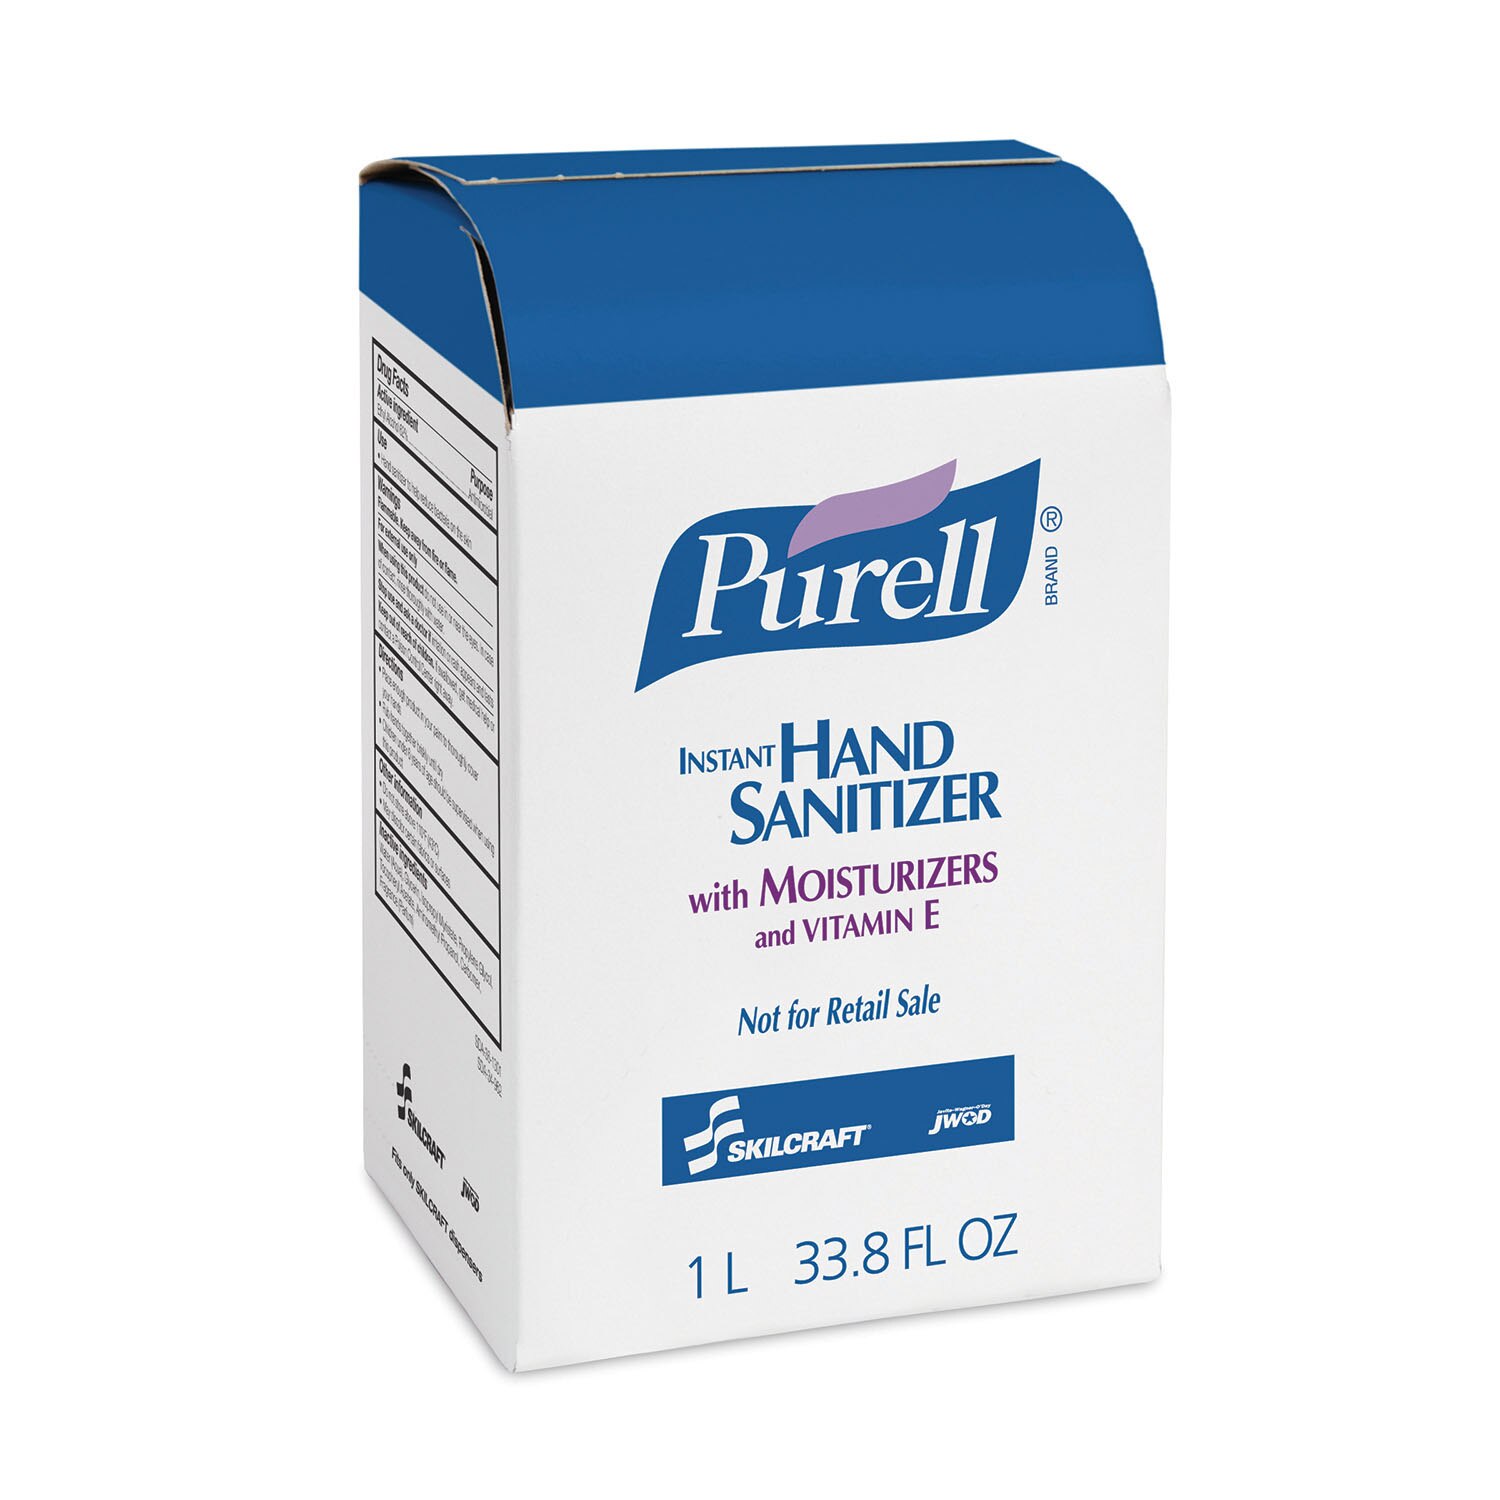 PURELL-SKILCRAFT, Instant Hand Sanitizer, 1000 mL